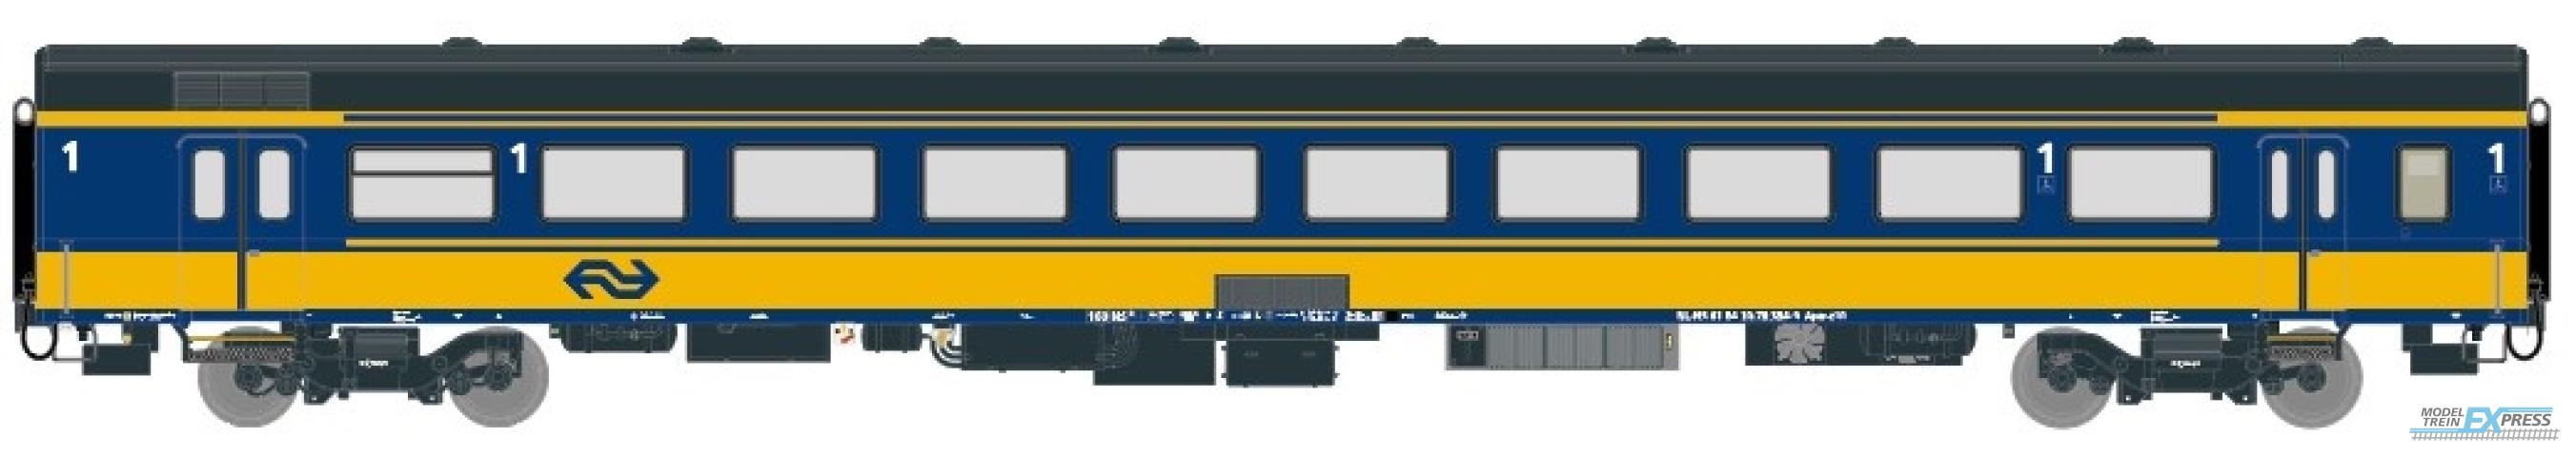 Exact-train 11104 NS ICRm Garnitur 4 Reisezugwagen A (Neue farbe Gelb / Blau), Ep. V